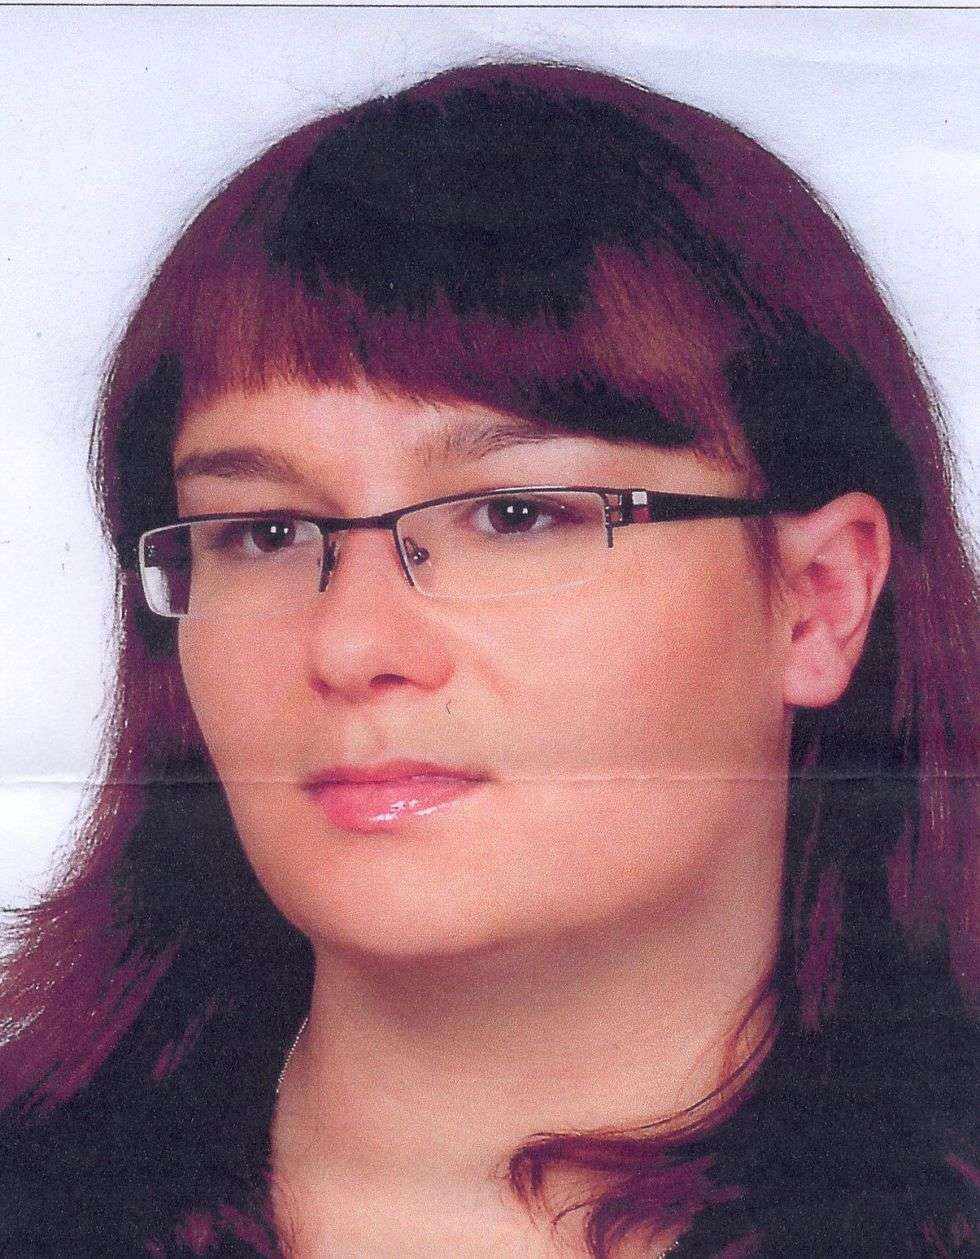  3 lutego 2009 r. w Tomaszowie Lubelskim (Lubelskie) zaginęła Sylwia Bielec. Pojechała do Lublina odebrać dokumenty z uczelni i do obecnej chwili nie nawiązała kontaktu z rodziną. Ma 23 lata, 165 cm wzrostu i brązowe oczy. W dniu zaginięcia ubrana była w błękitną czapkę, beżową kurtkę, czarna spódnicę, czarne rajstopy, czarne kozaki miała ze sobą szarą torebkę.